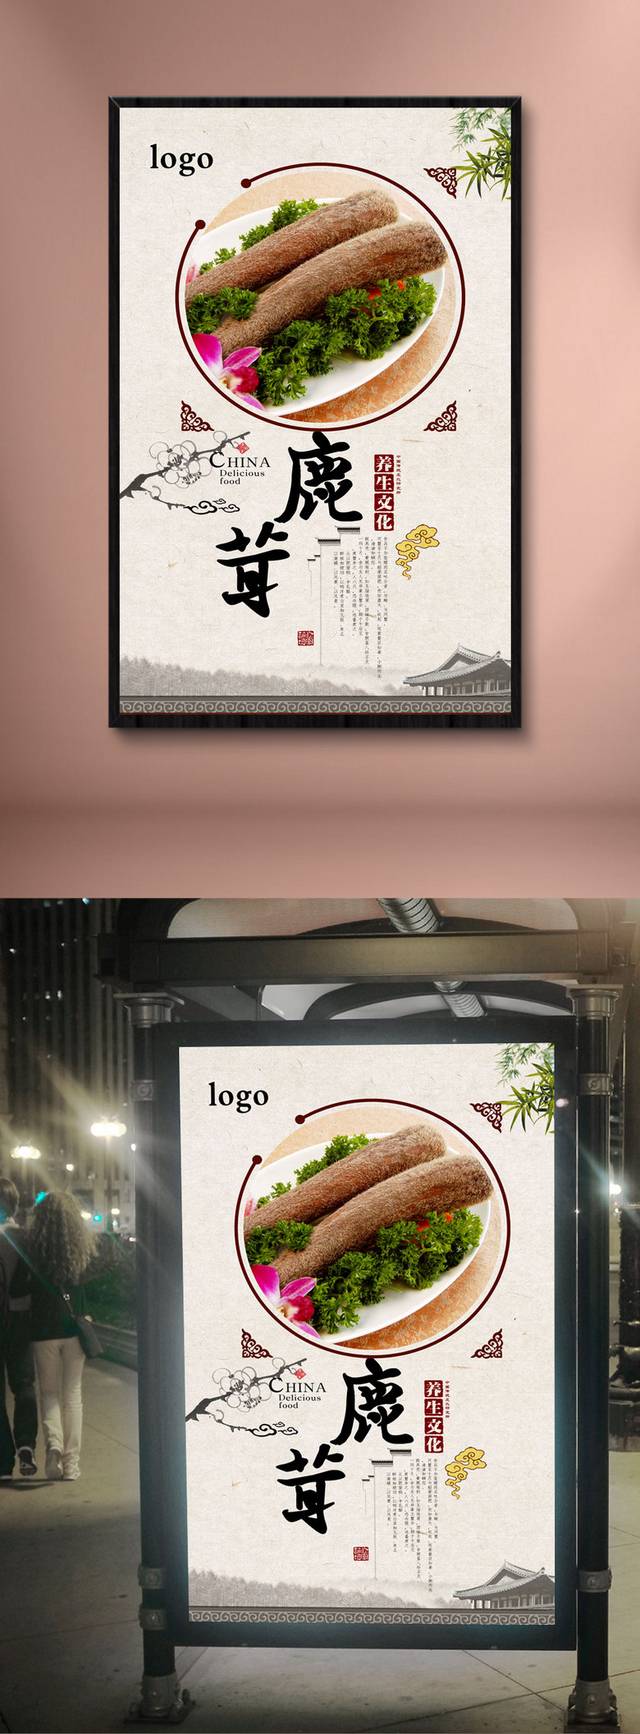 中国风高档鹿茸保健品宣传海报设计psd